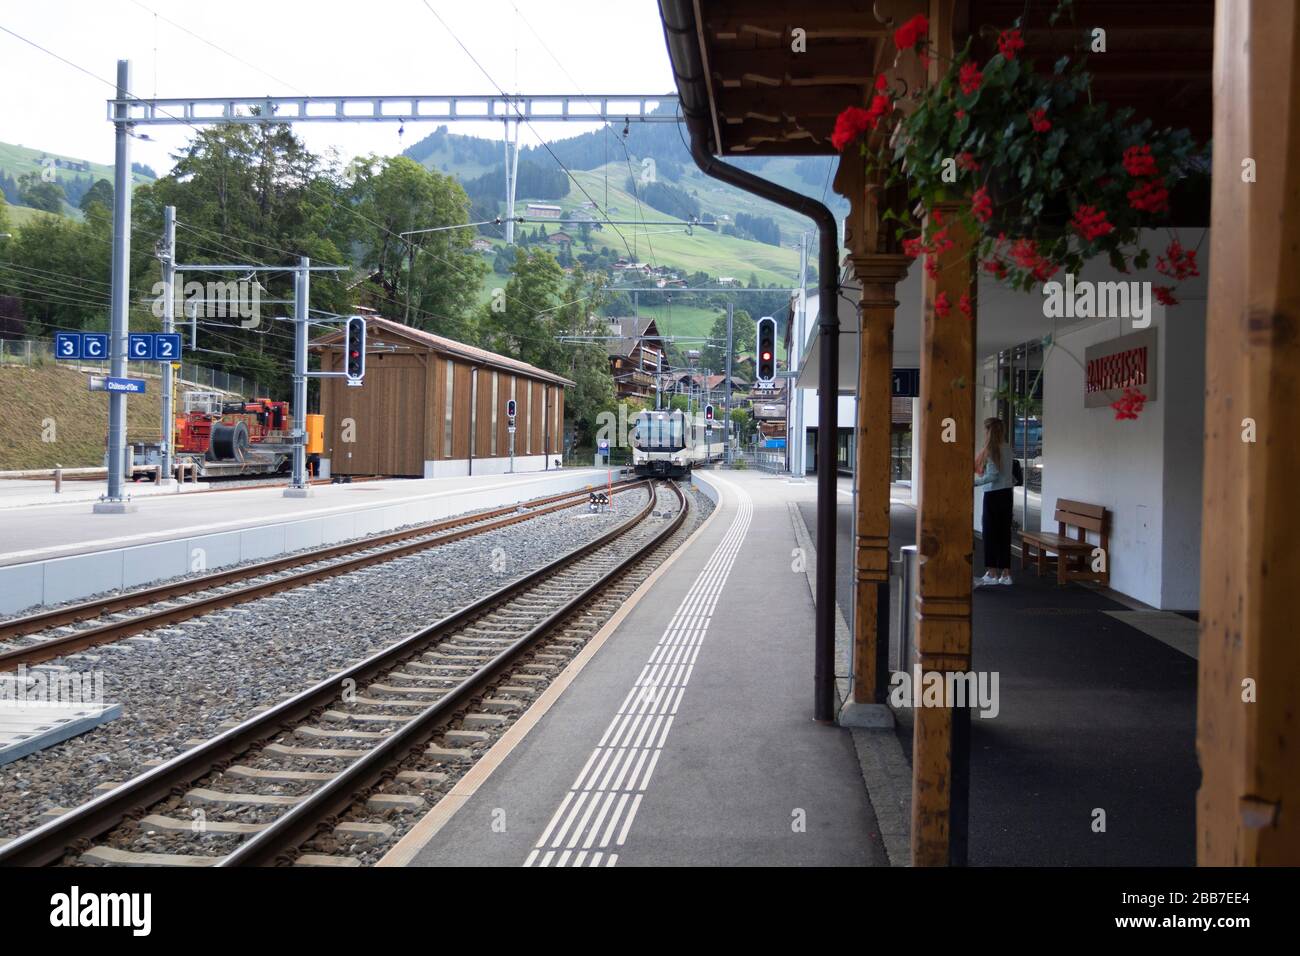 Suisse train à bulle, Gruyère dans le canton de Fribourg, Suisse, Europe, 08/09/2019, Suisse train à bulle , fervents. Banque D'Images